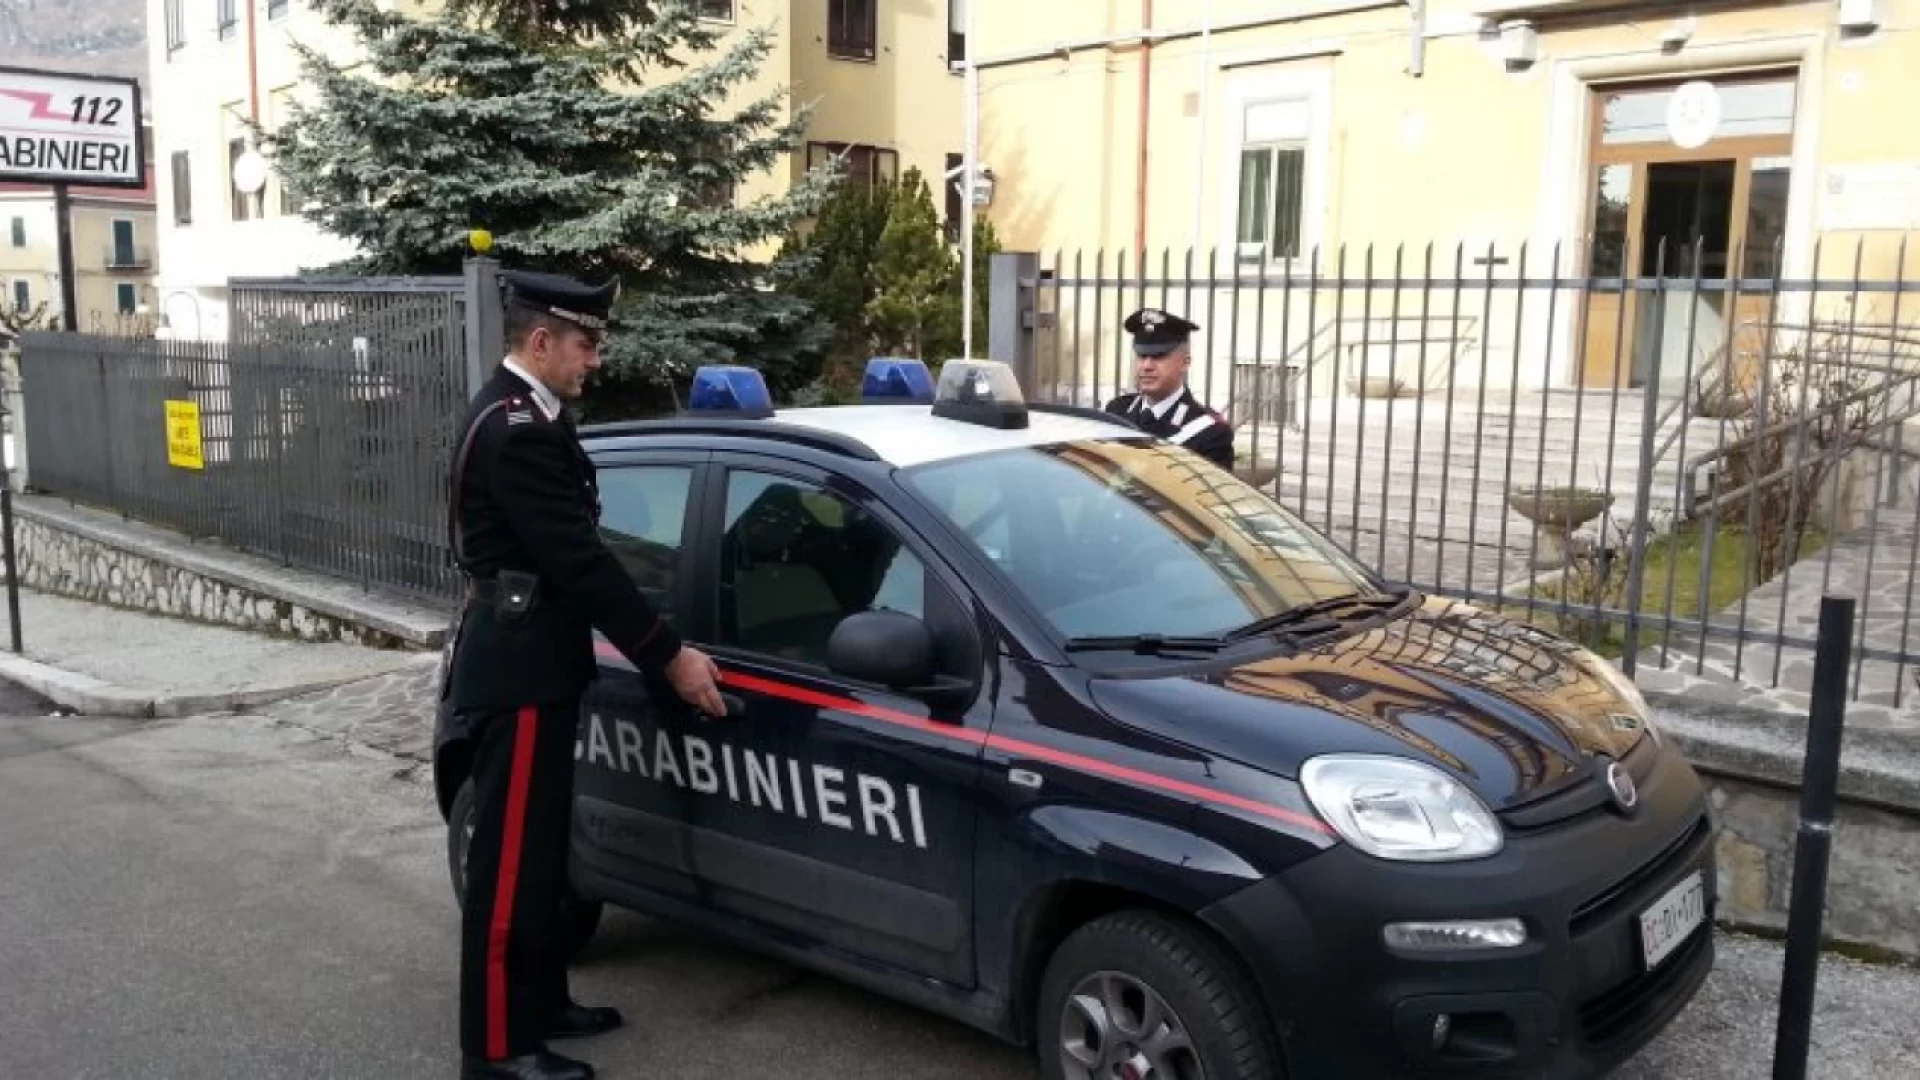 Carabinieri Castel Di Sangro: Giuseppe Testa e’ il nuovo comandante, sostituisce l’uscente Fabio Castagna.